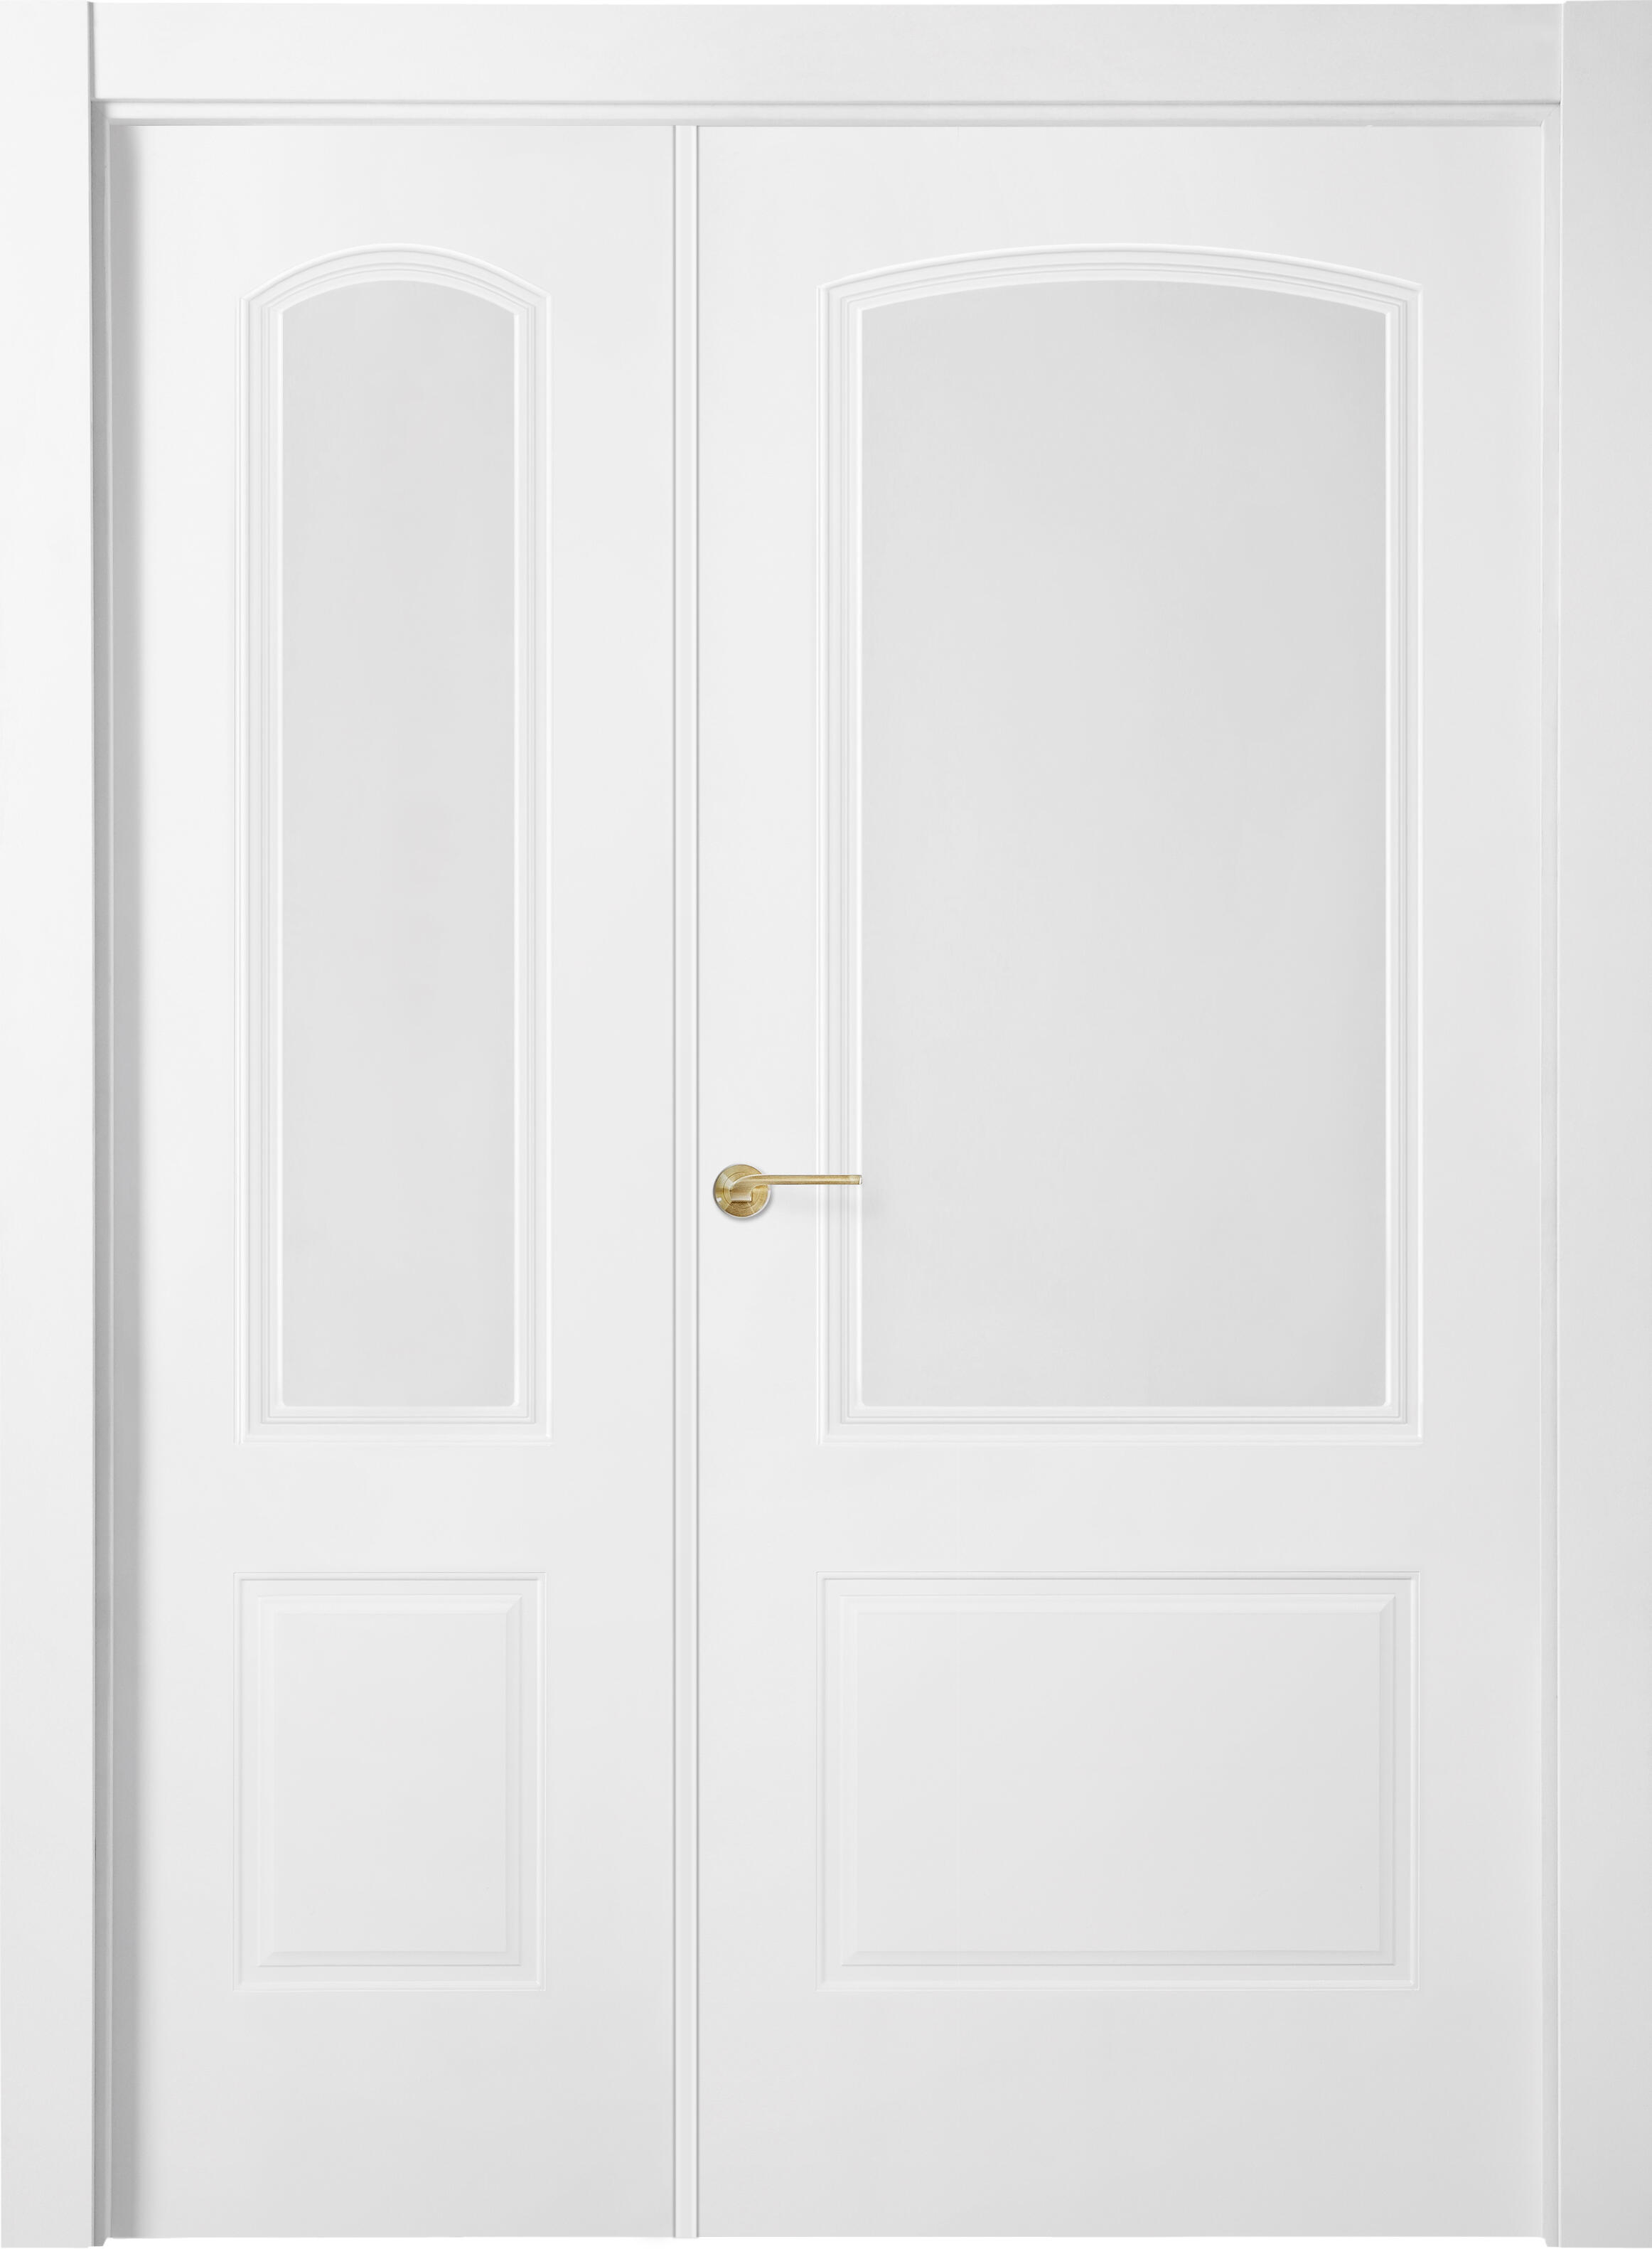 Puerta abatible berlin blanca line plus con cristal blanco derecha de 115 cm